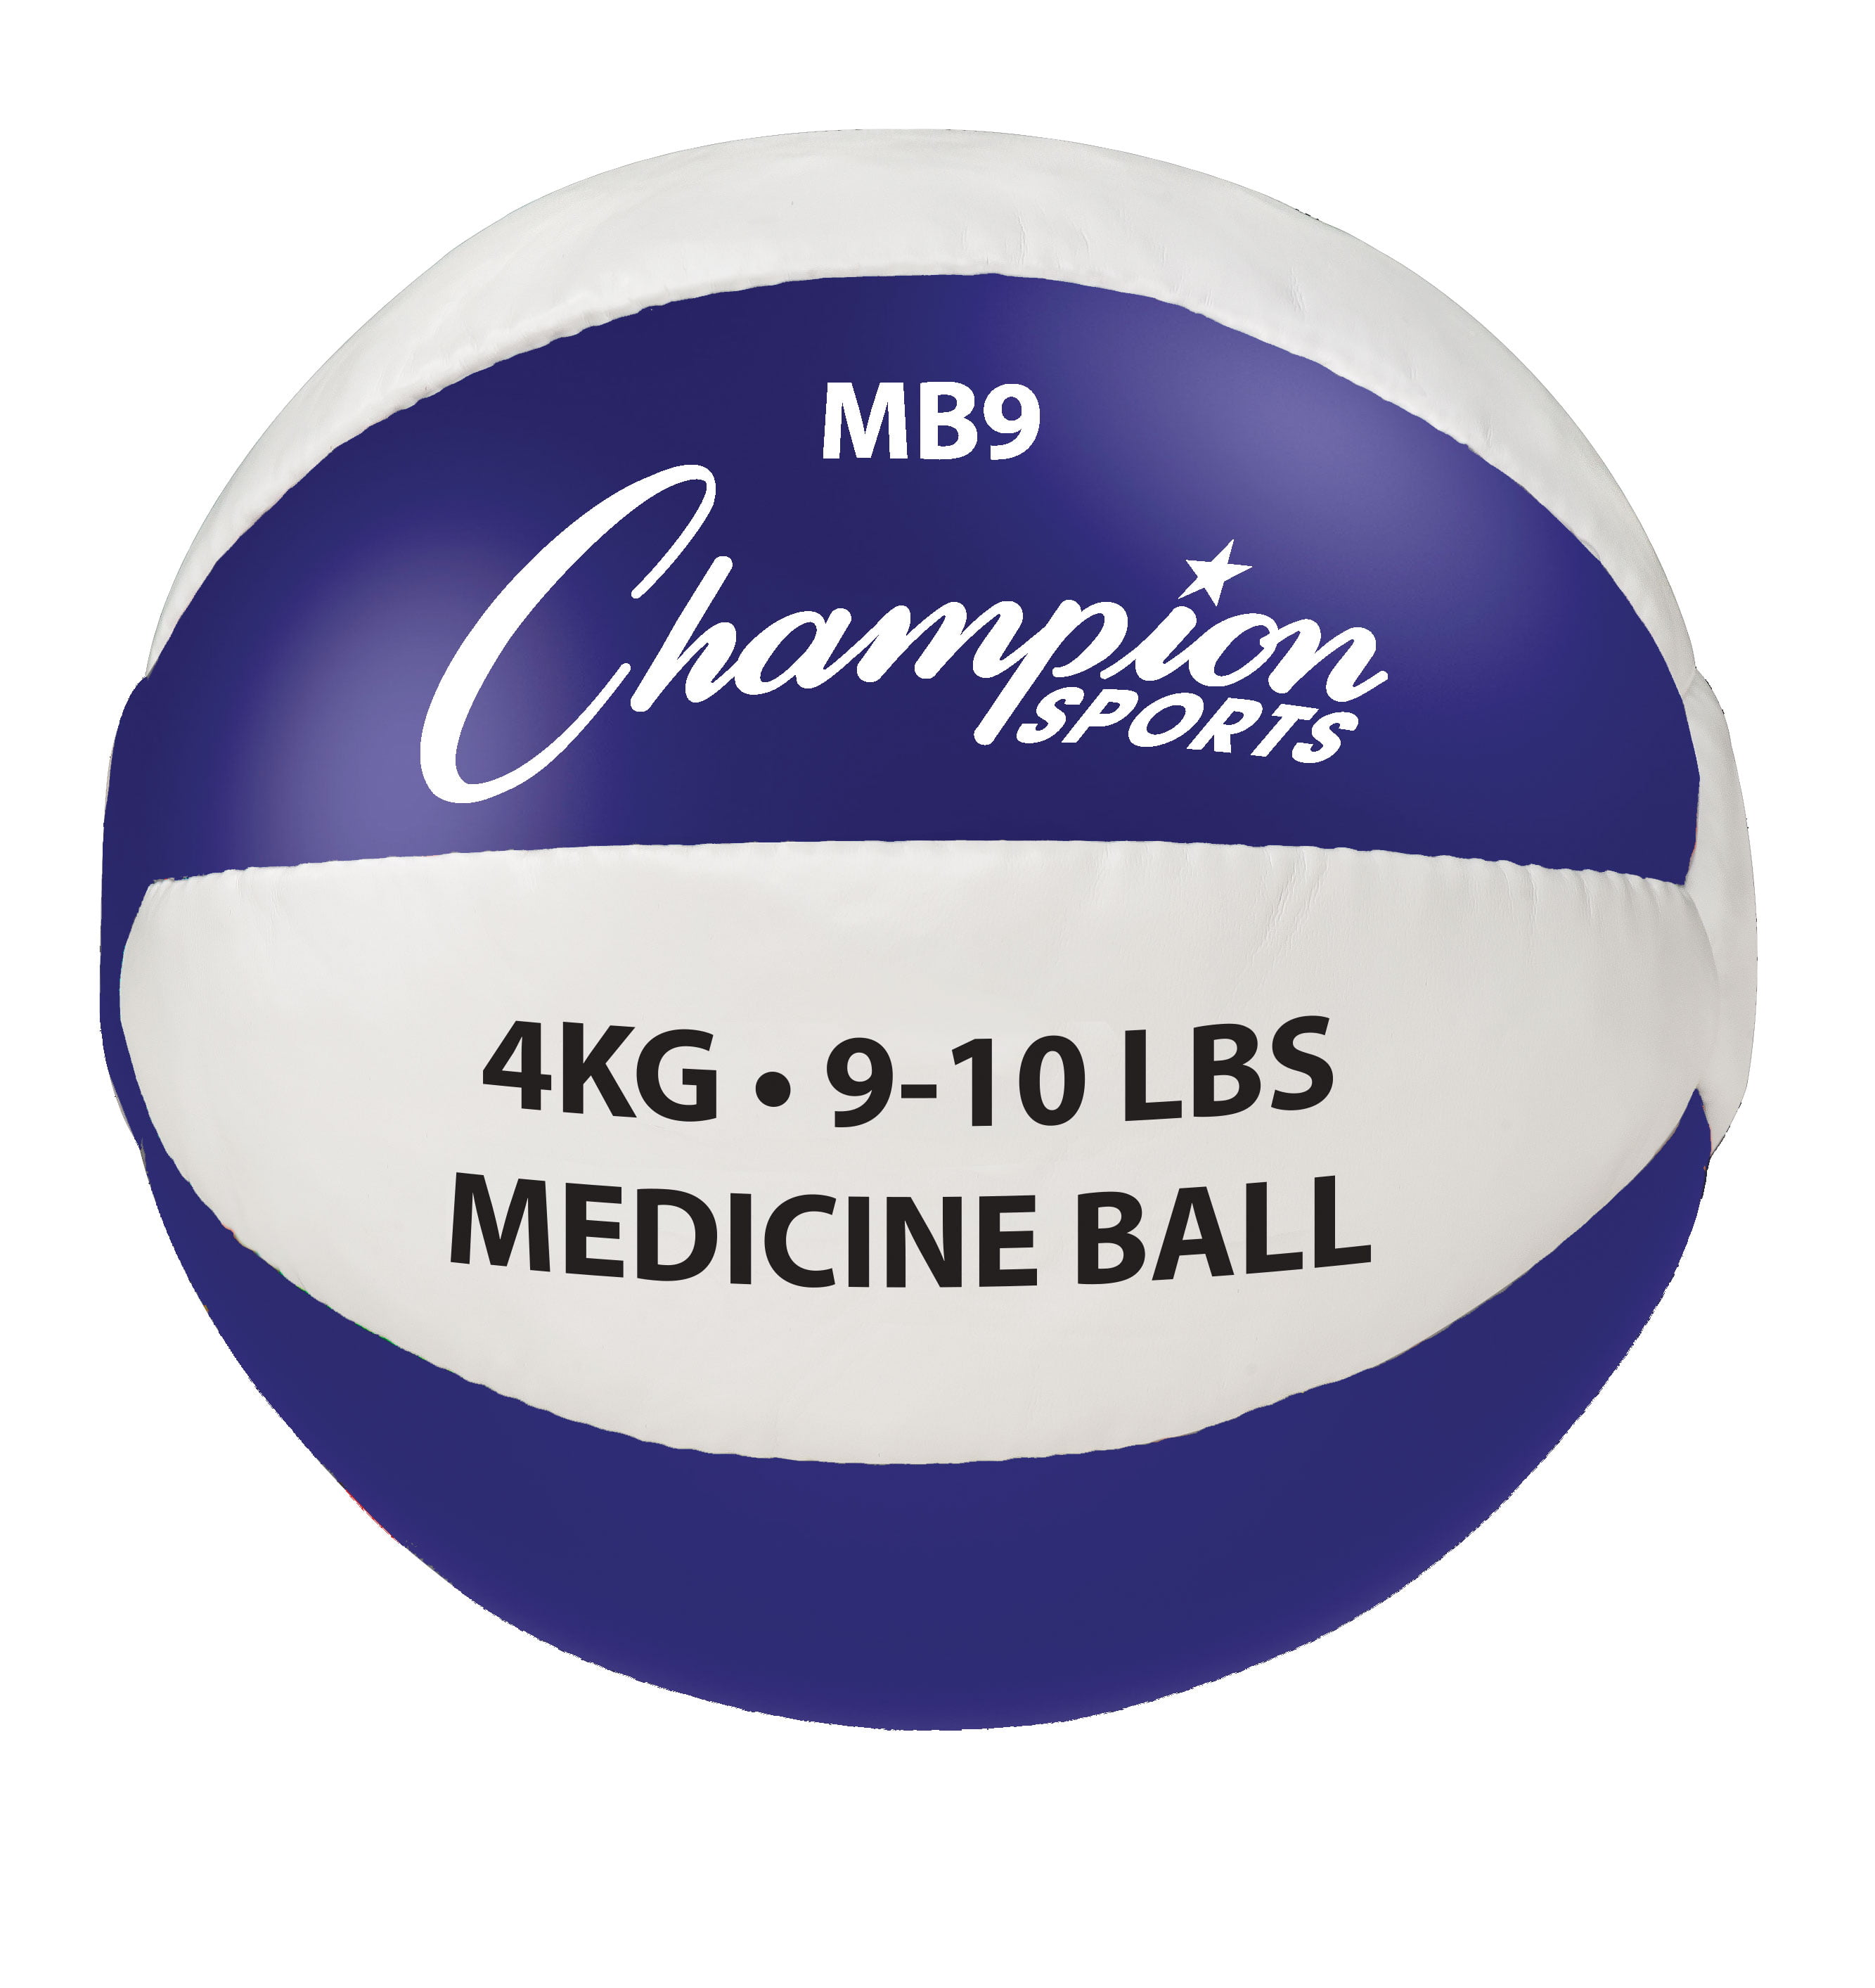 10lb medicine ball